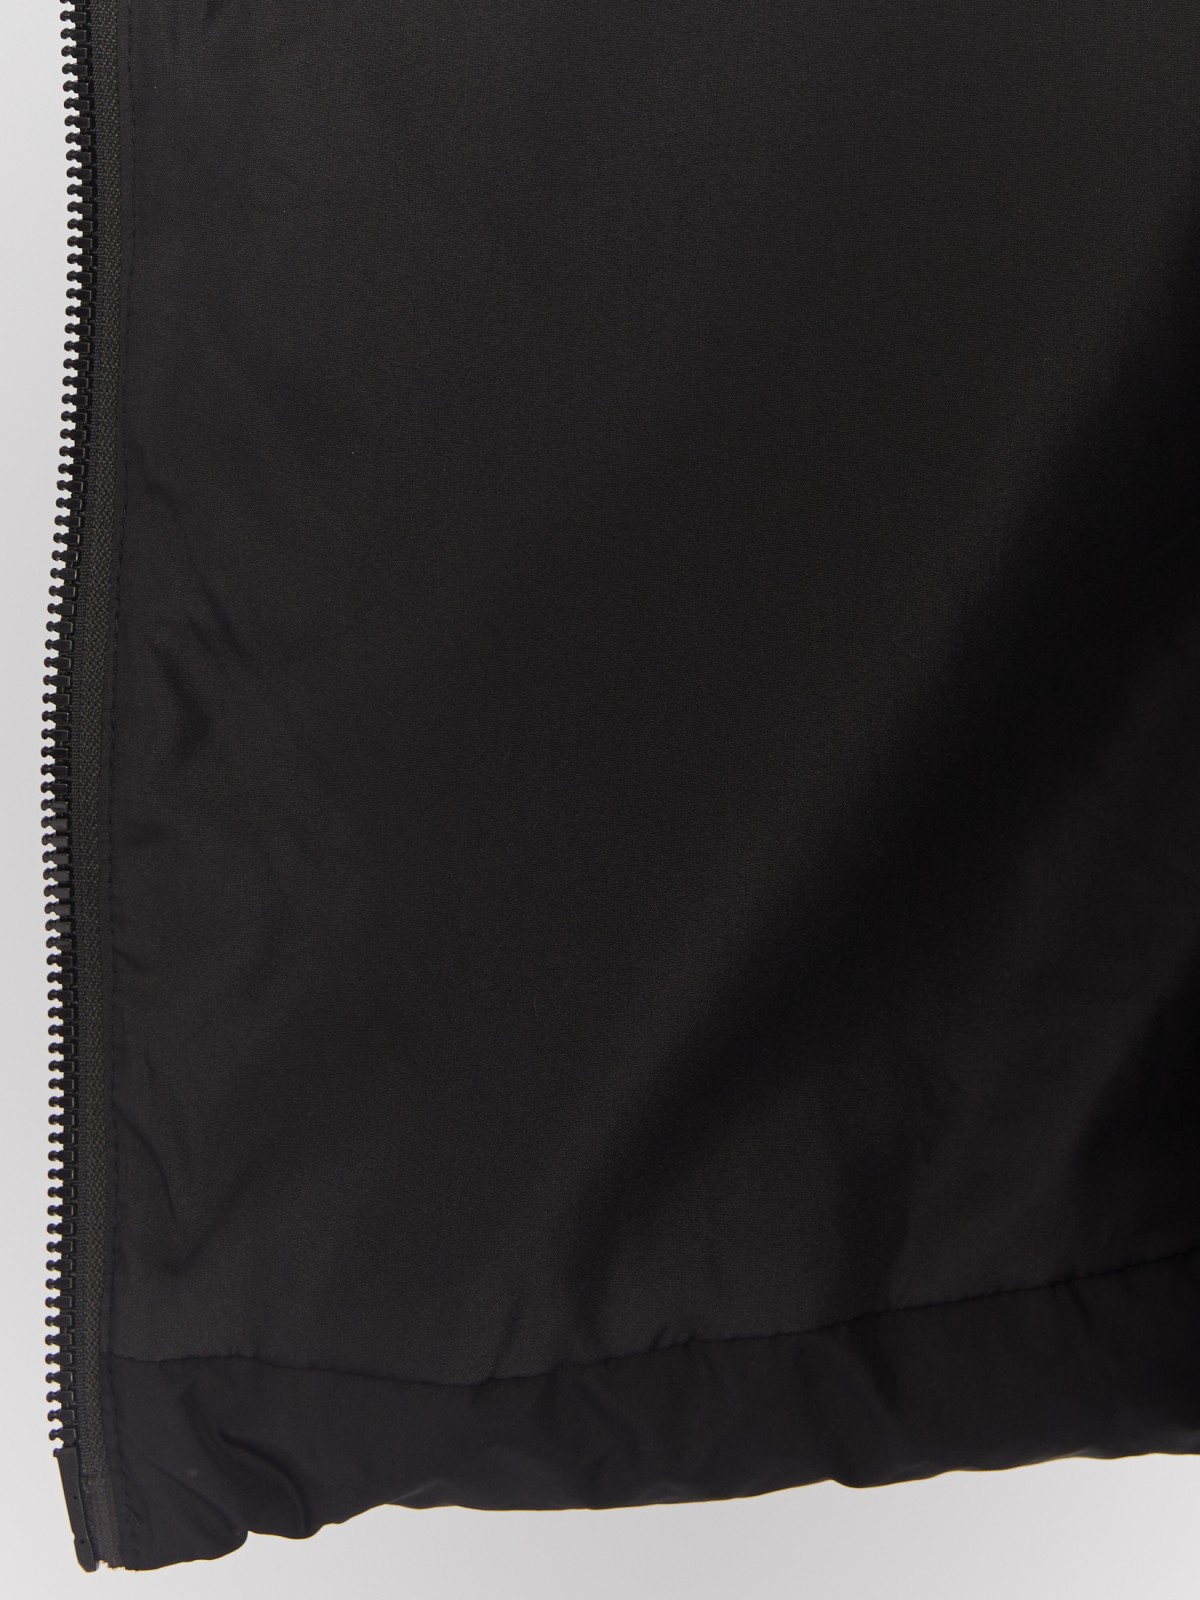 Тёплая куртка-пальто с капюшоном и отделкой из экомеха zolla 022425276044, цвет черный, размер M - фото 6